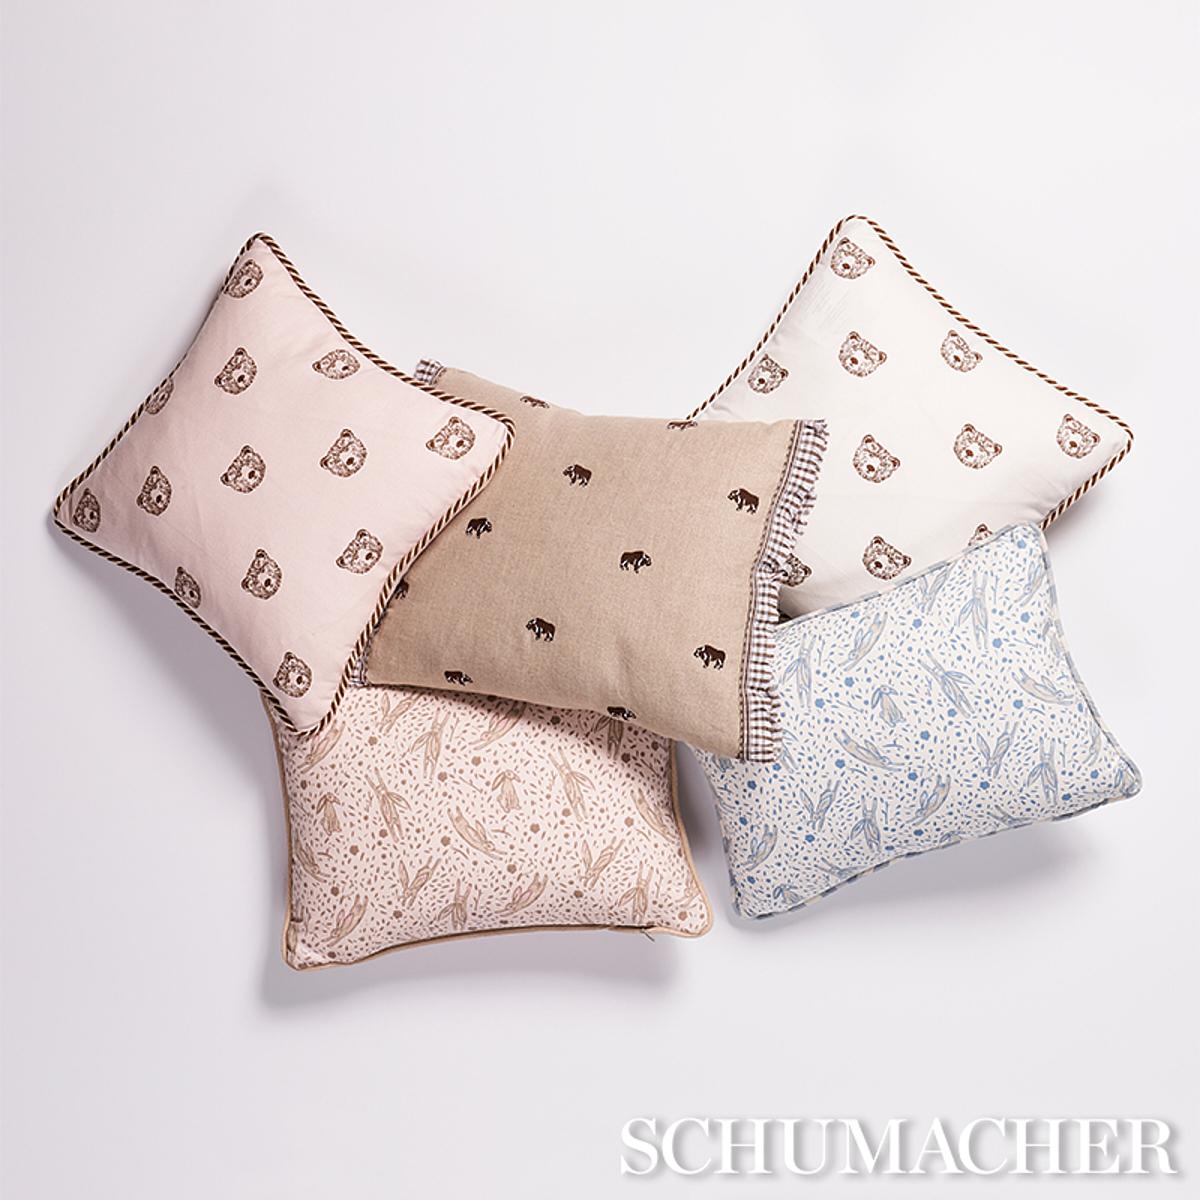 Modern Schumacher x Marie-Chantal Rabbit Print 18 x 12